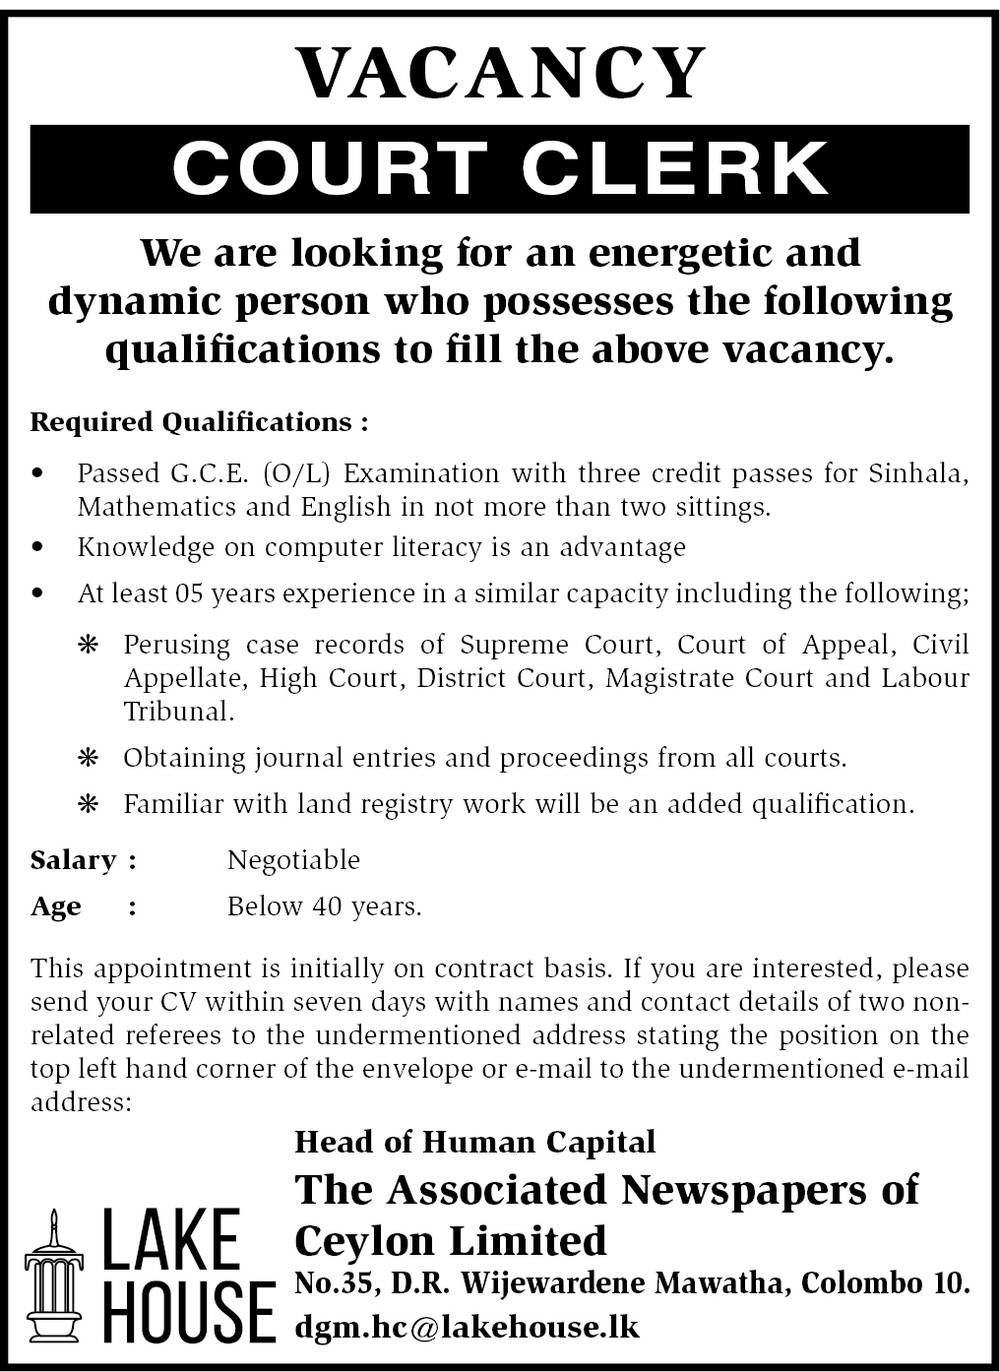 Court Clerk Job Vacancy - The Associated Newspapers of Ceylon Jobs Vacancies Details